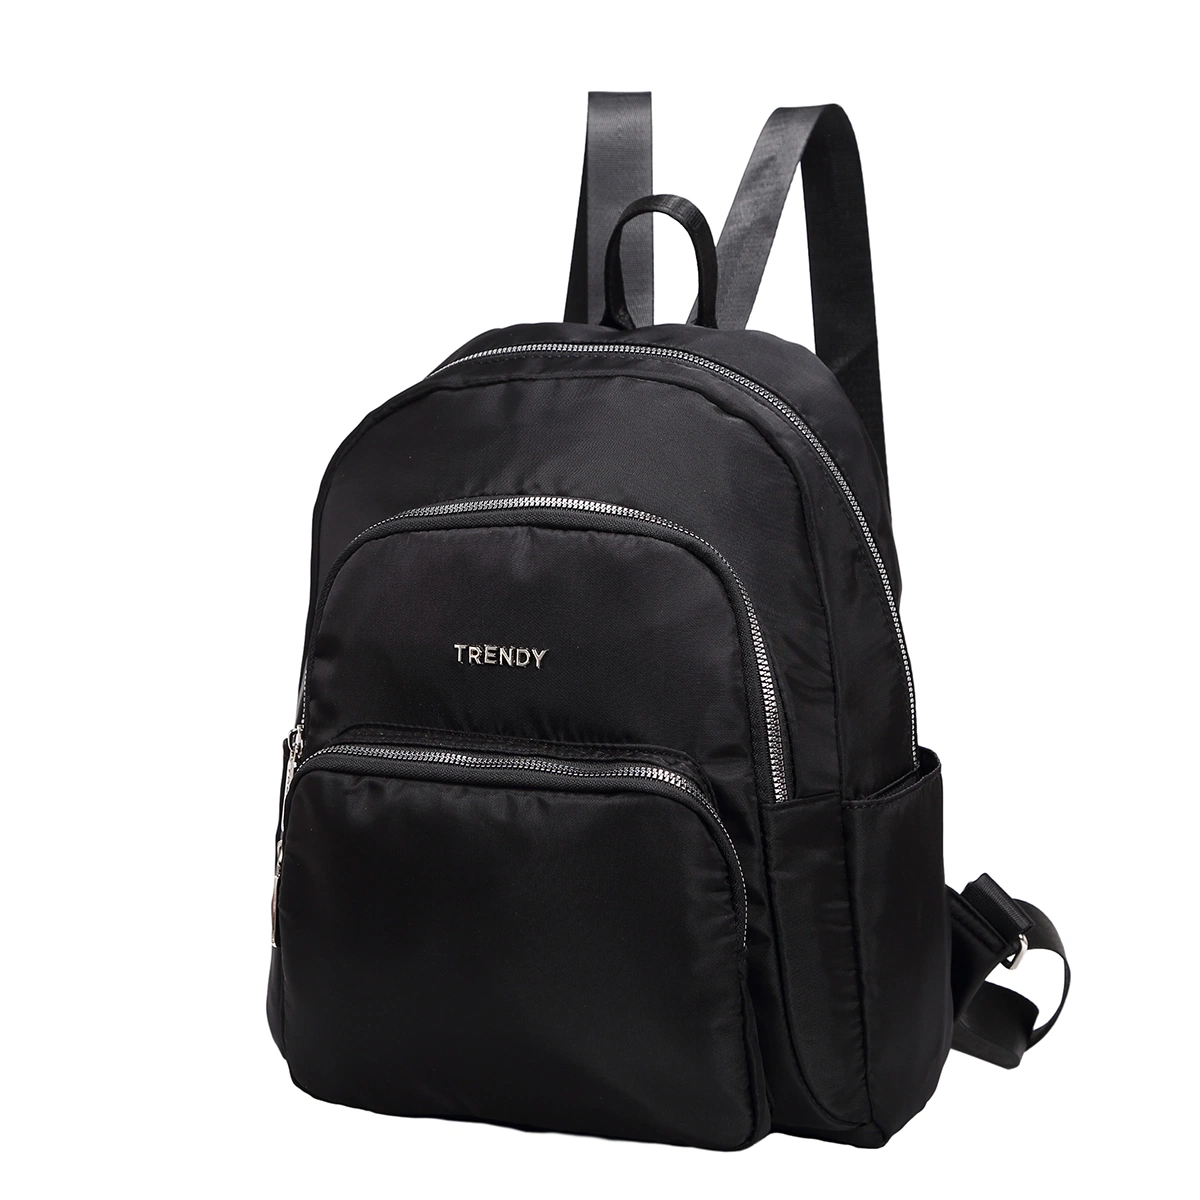 OEM Student School Bag Stylish Large Capacity Travel Backpack